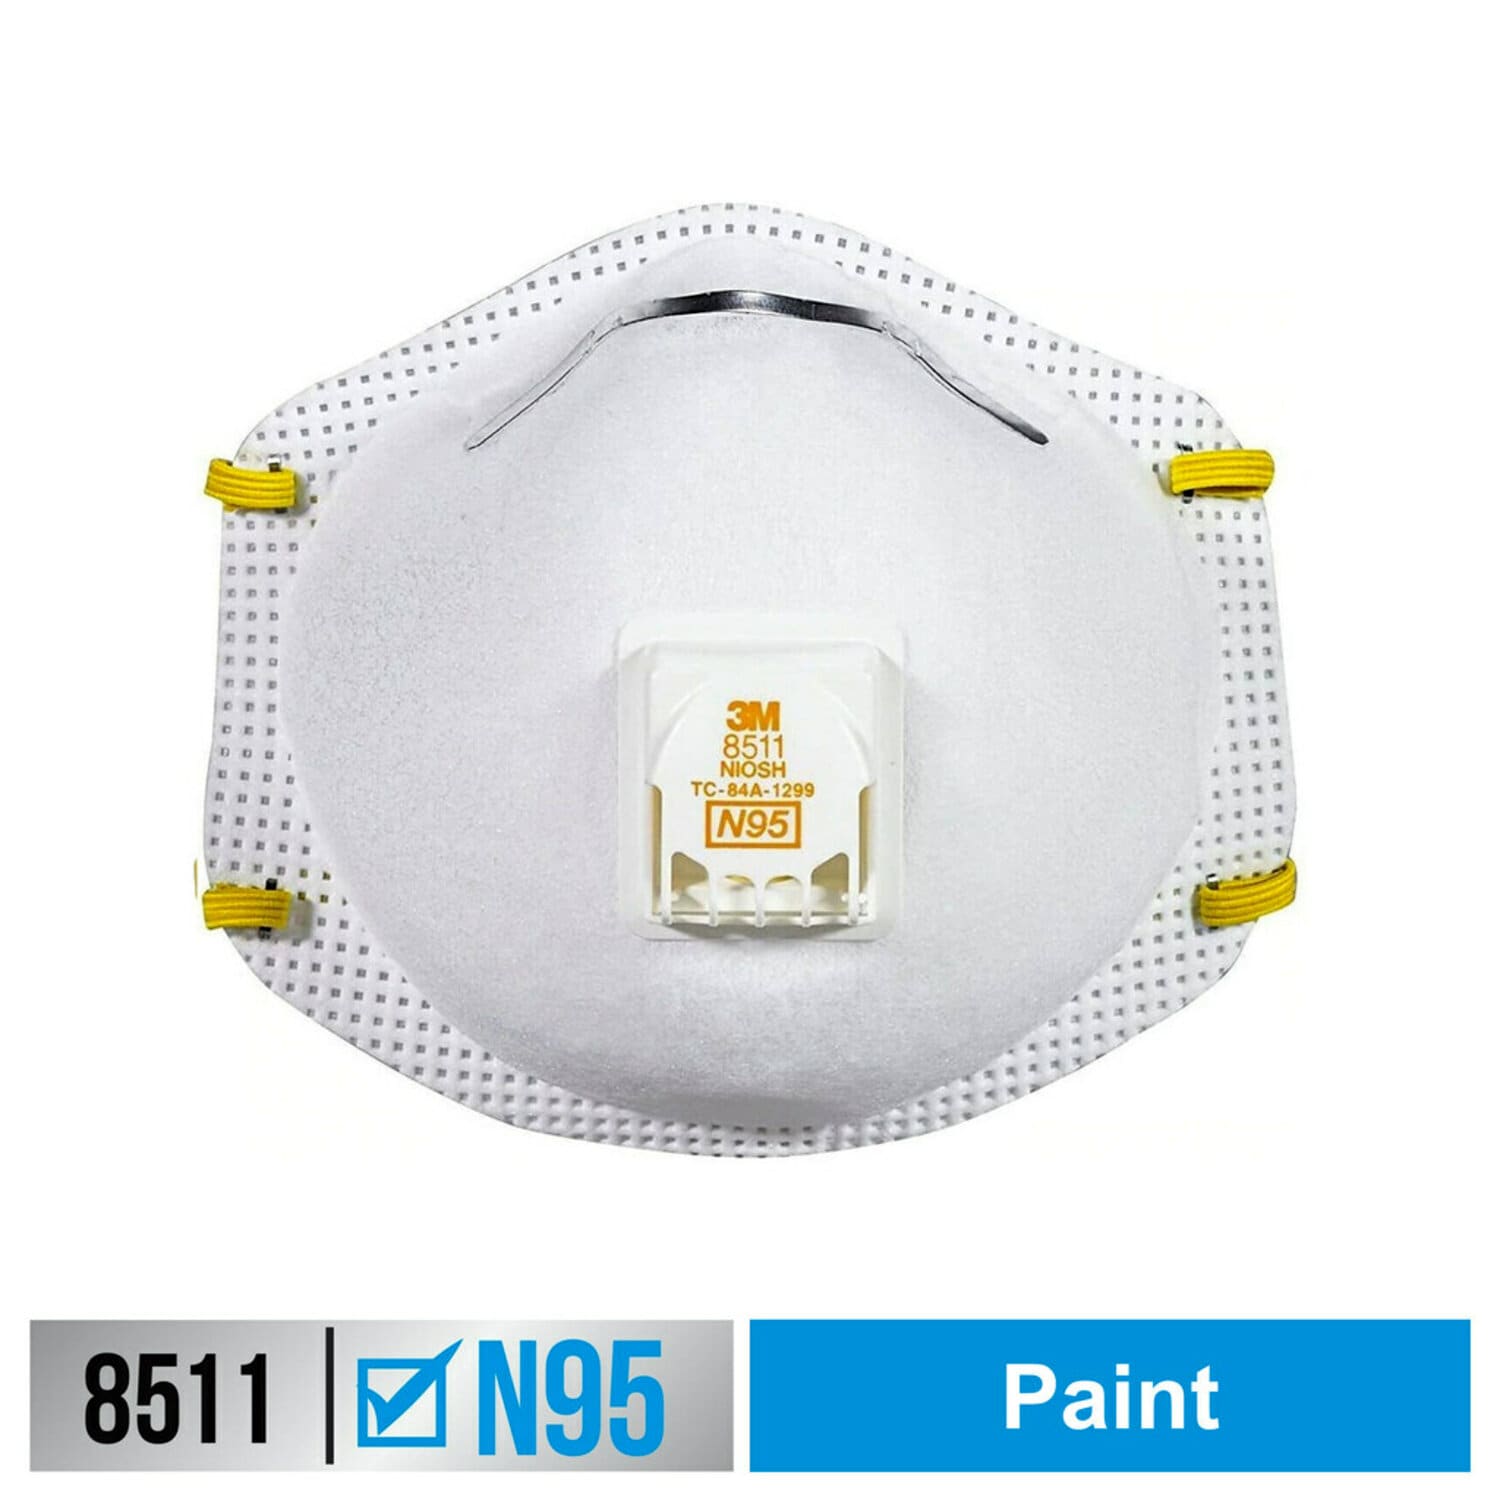 7100157701 - 3M Paint Sanding Valved Respirator 8511P2-C-PS-WM, 2 ea/pk, 2
pk/inner, 6 inner/cs